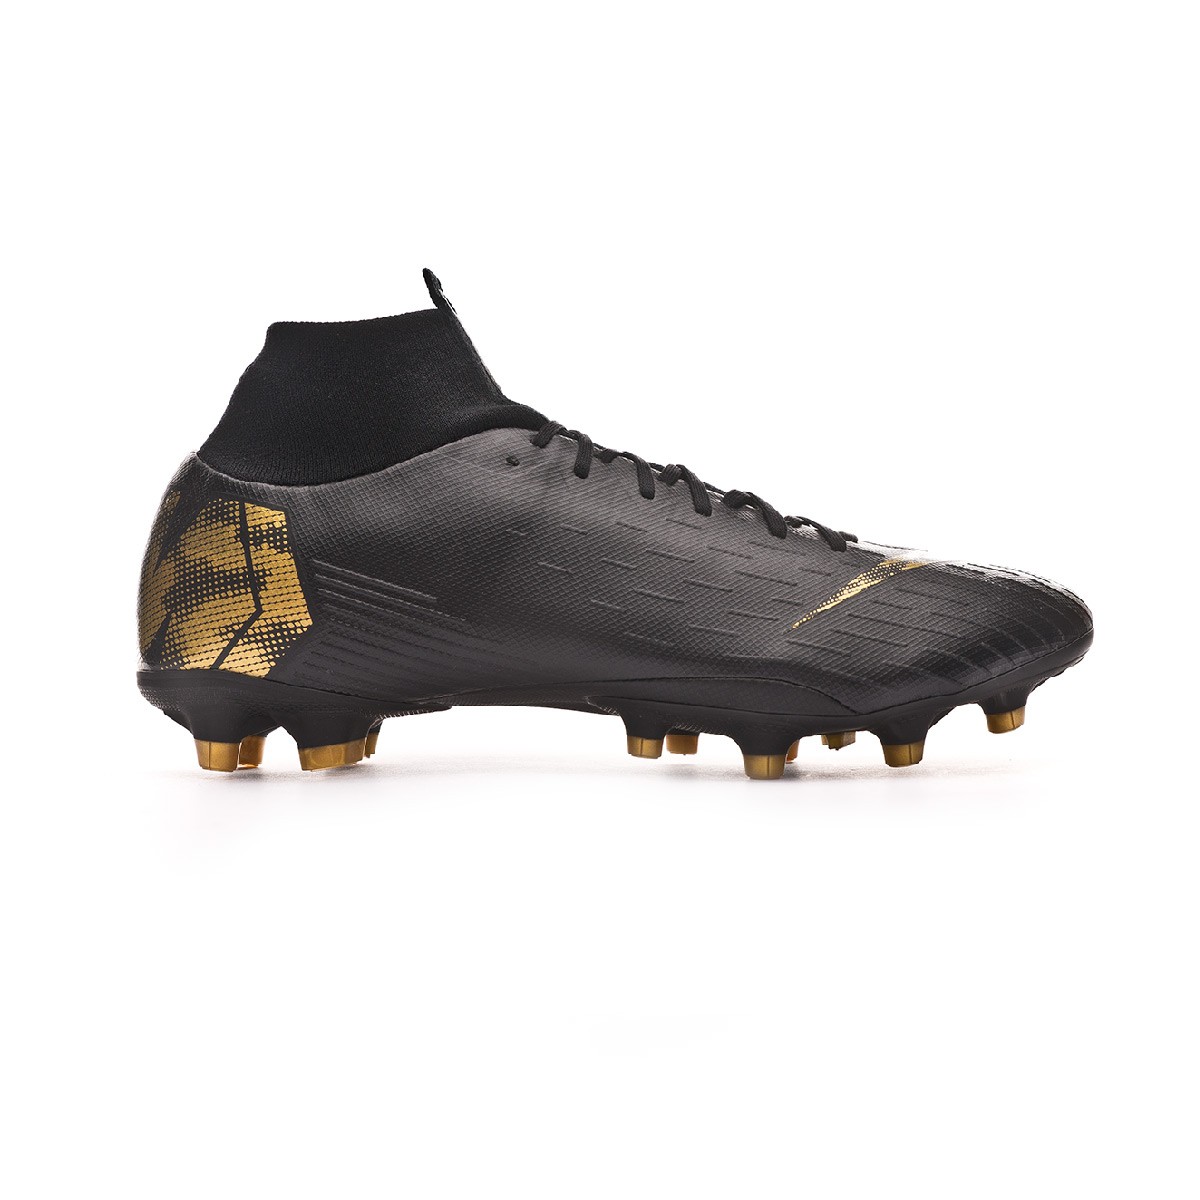 Bota de fútbol Nike Mercurial Superfly VI Pro AG-Pro Black-Metallic vivid  gold - Tienda de fútbol Fútbol Emotion